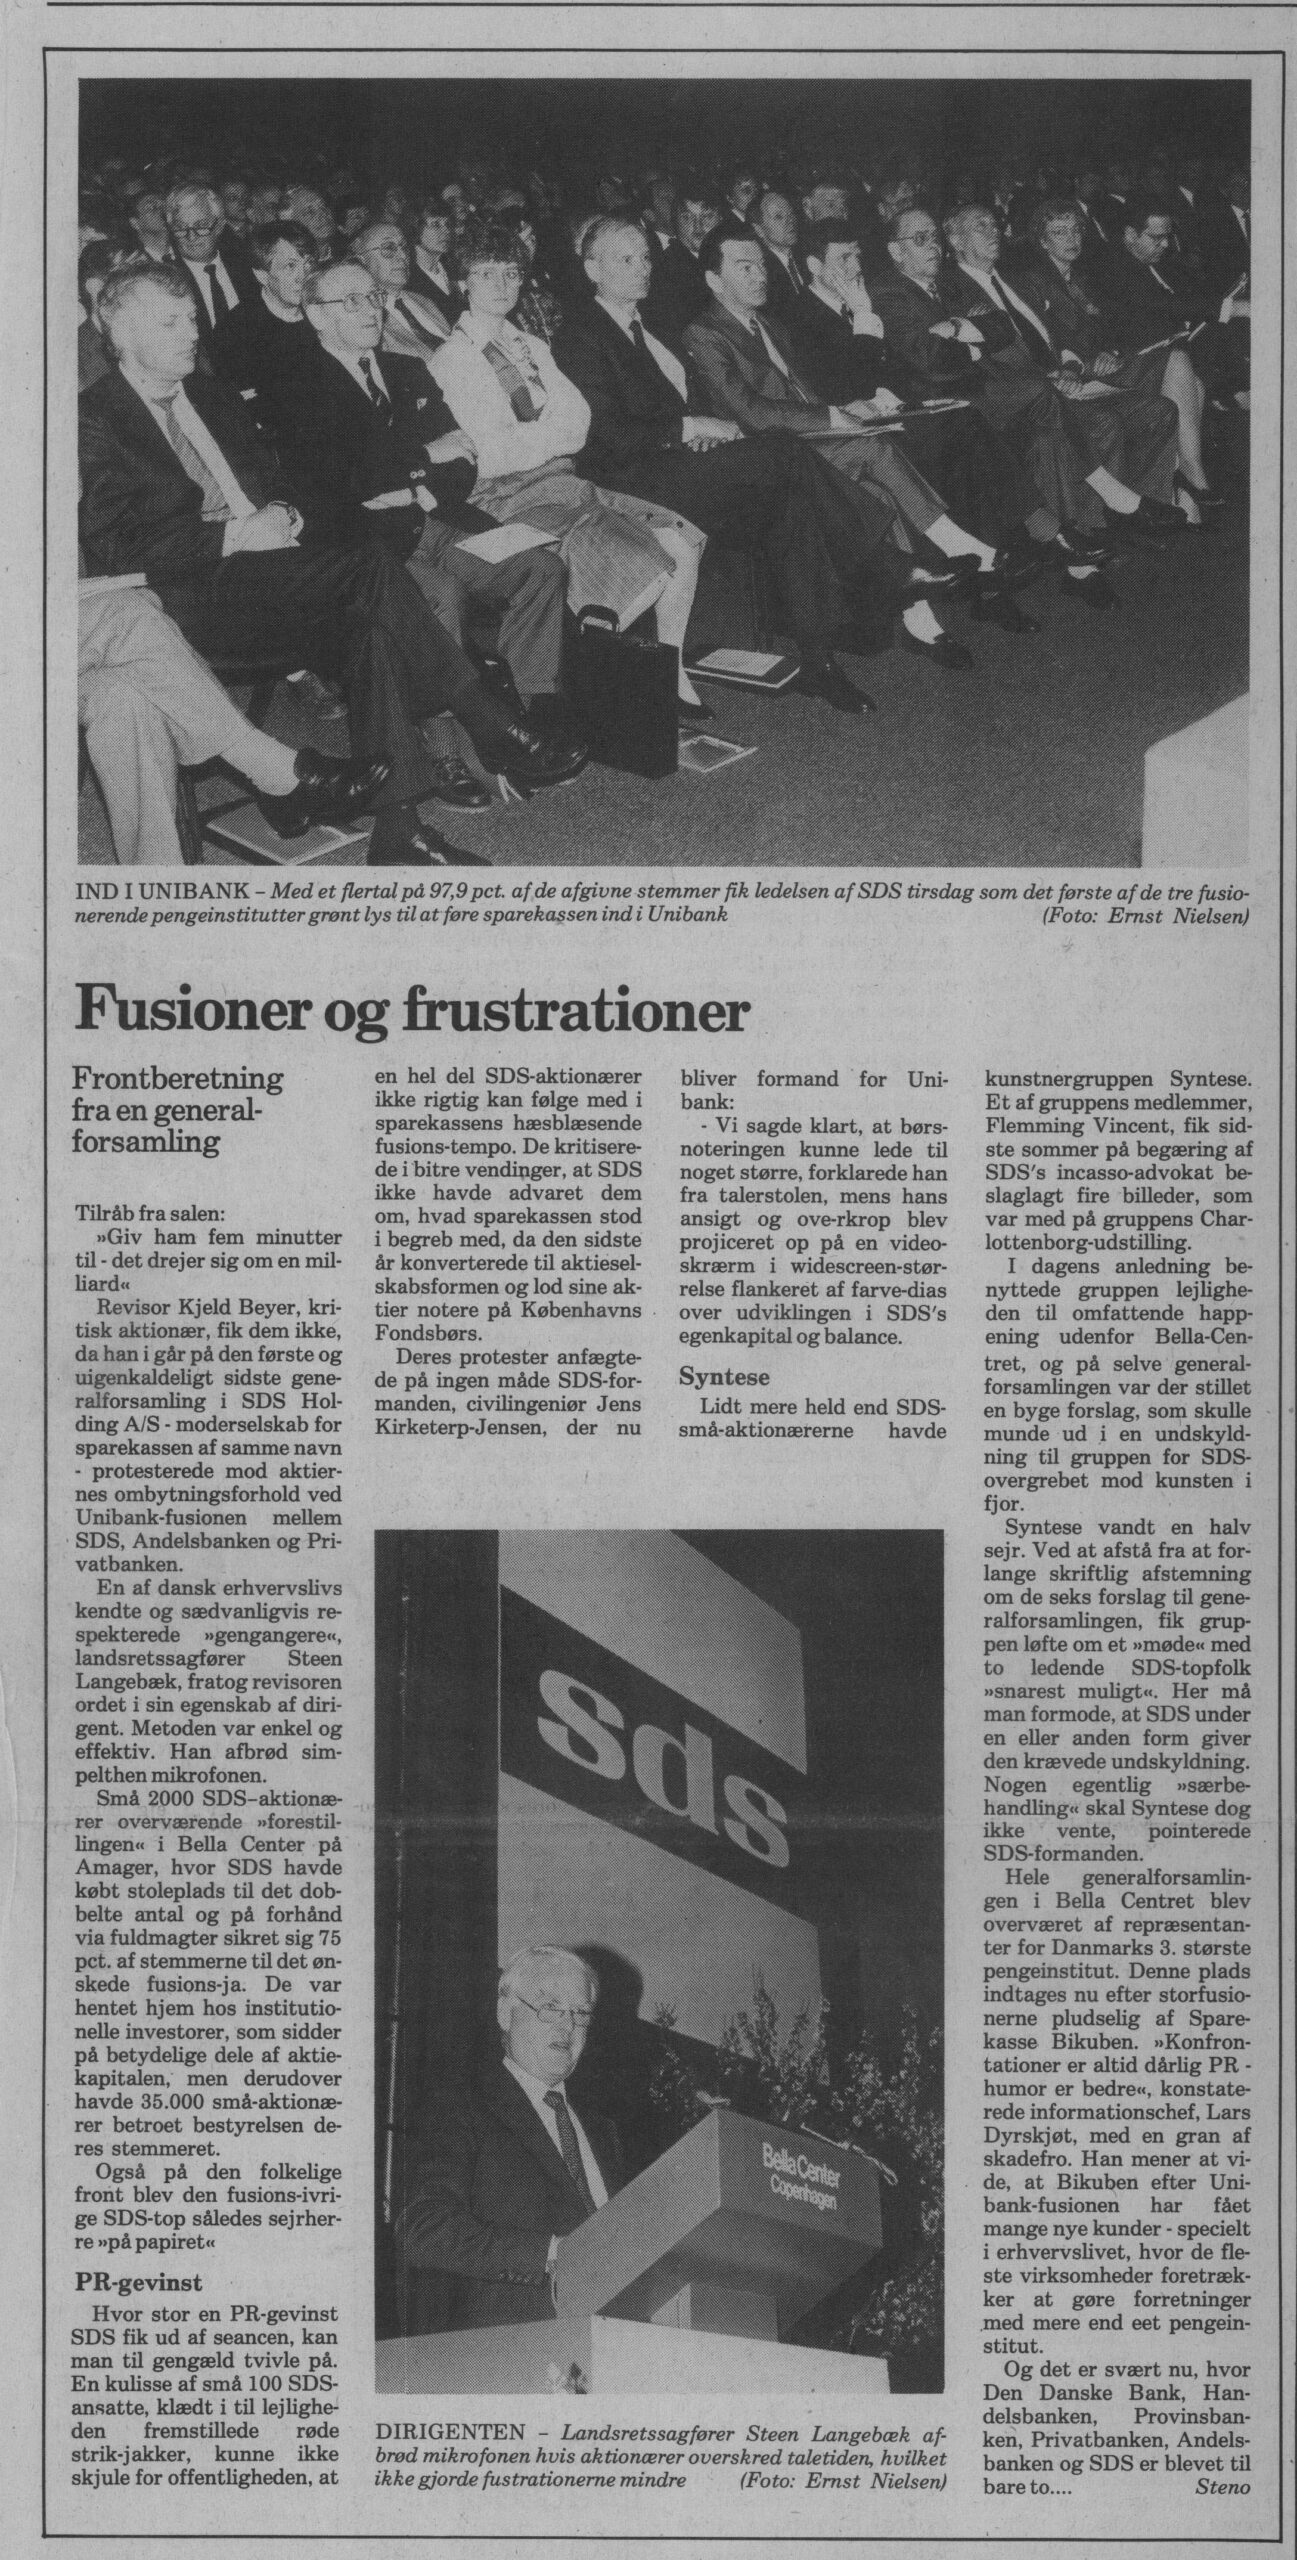 Fusioner og frustrationer. Omtale (Retssag. Den lange rejse. Charlottenborg, København 1989). Steno. Information.